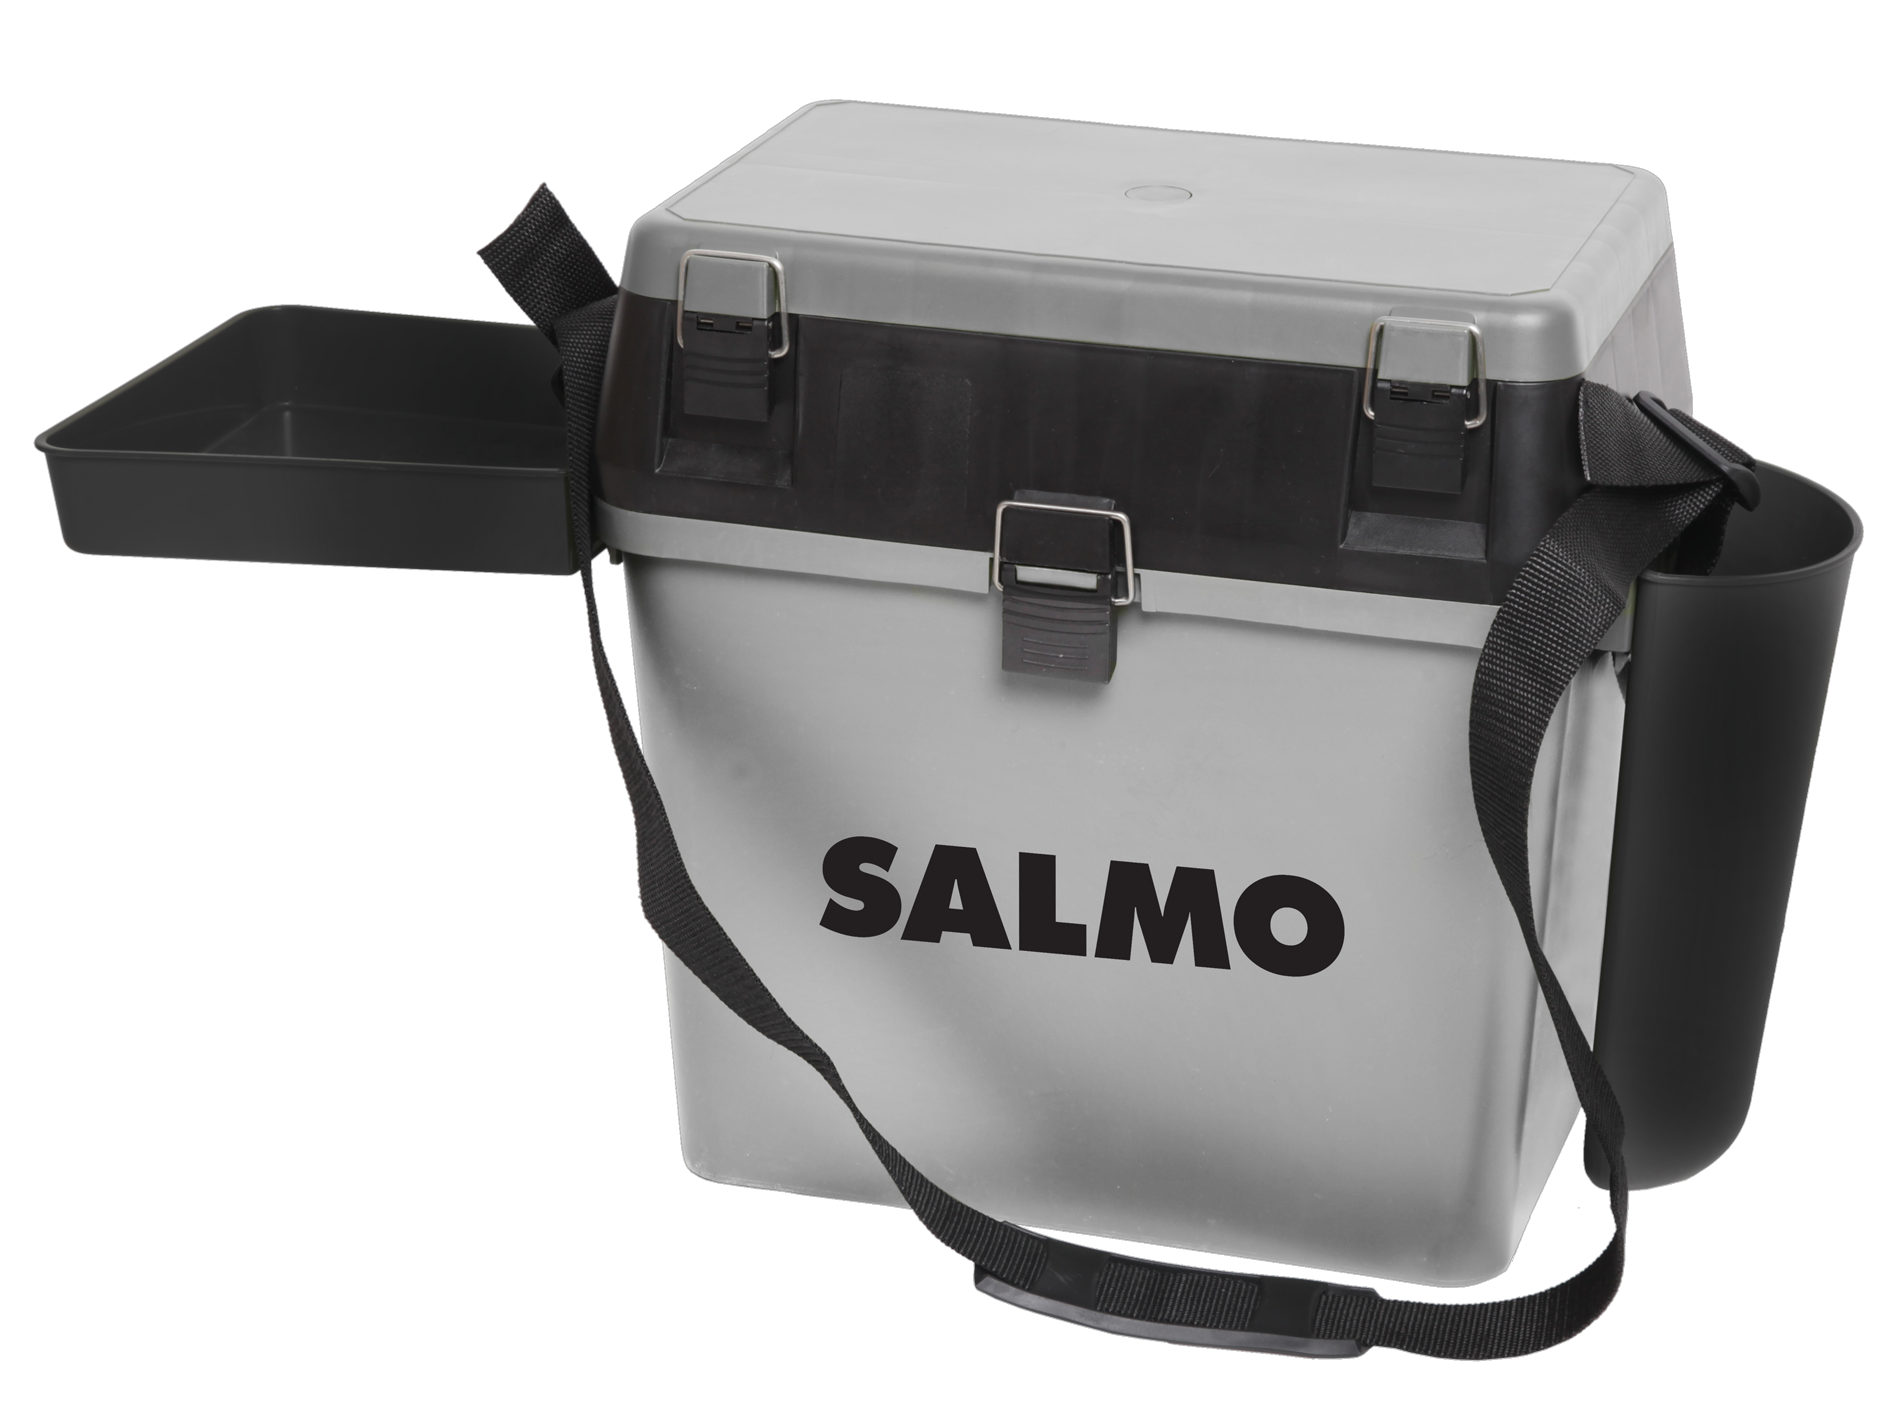 Рыболовный ящик для зимней рыбалки. Salmo 2075 ящик зимний. Ящик рыболовный зимний Salmo 2075. Ящик рыболовный зимний Salmo 2-х ярус. Ящик рыболовный Салмо 2075.